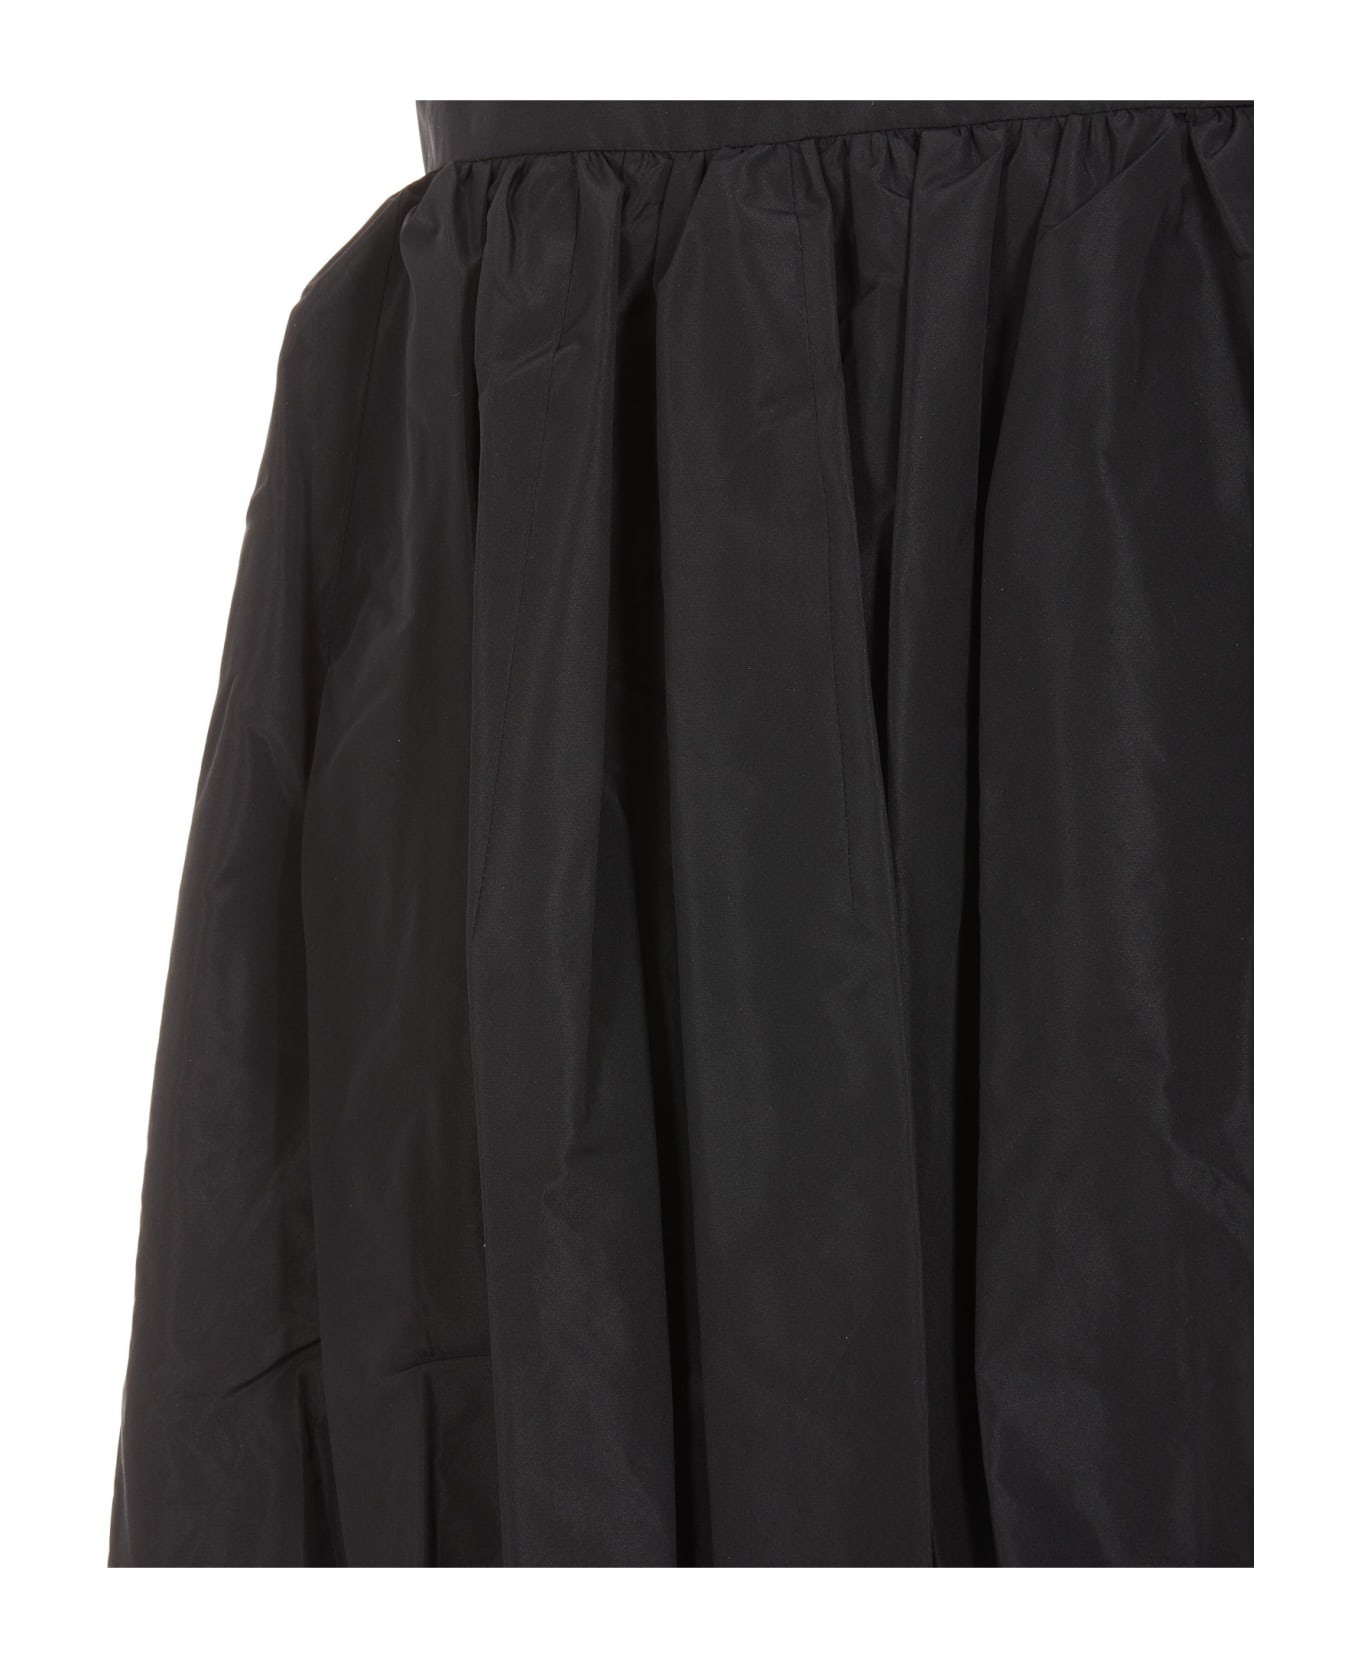 Patou Mini Skirt - Black